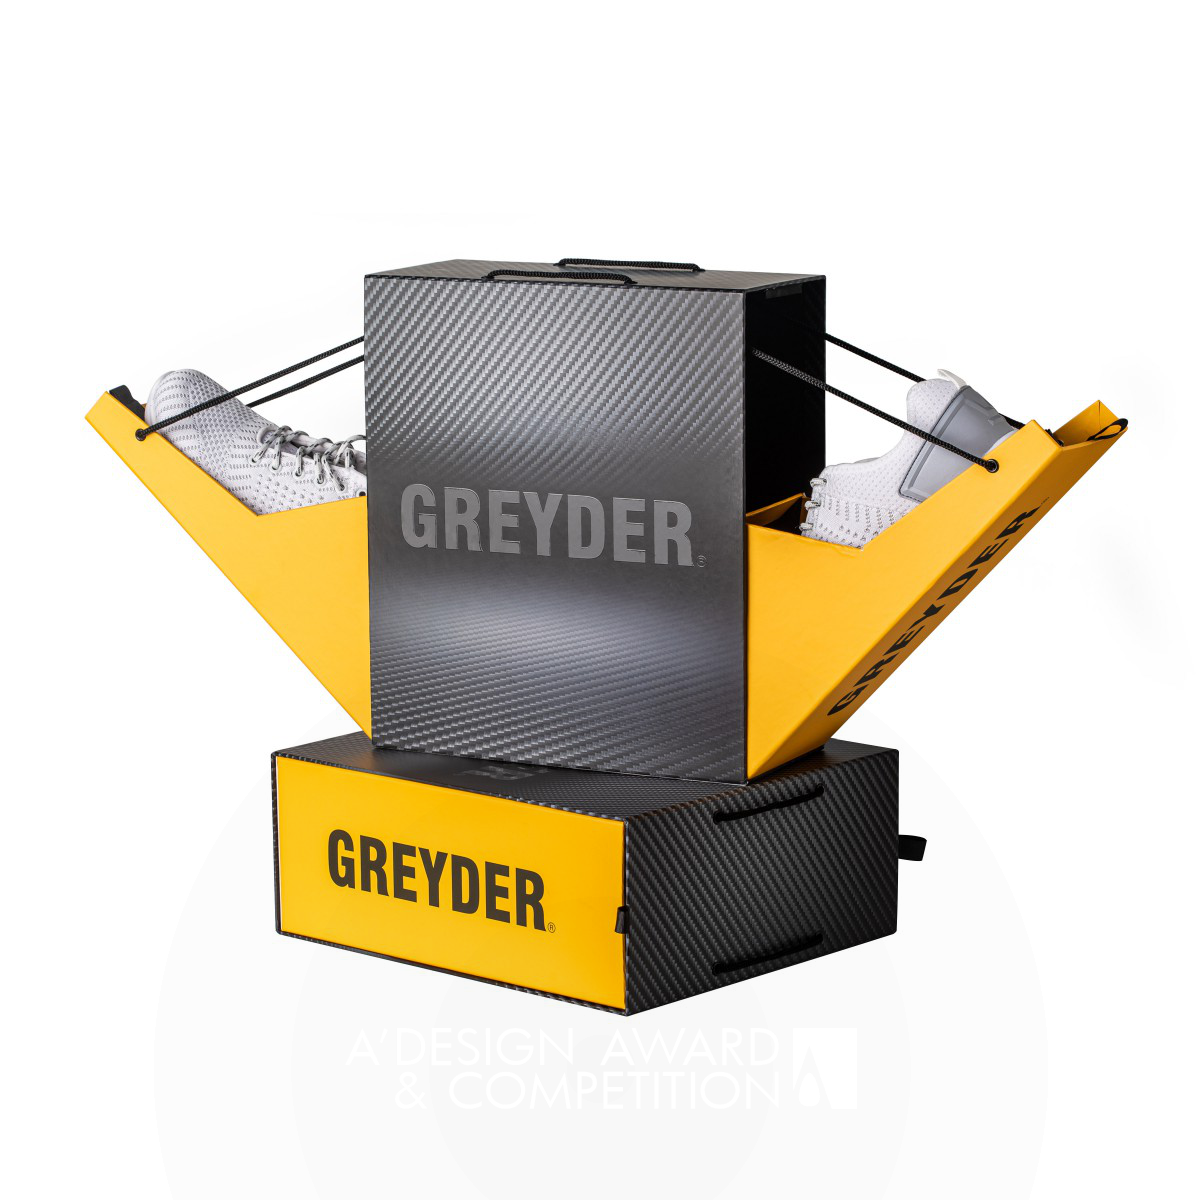 Greyder V Package Design by Musa Çelik